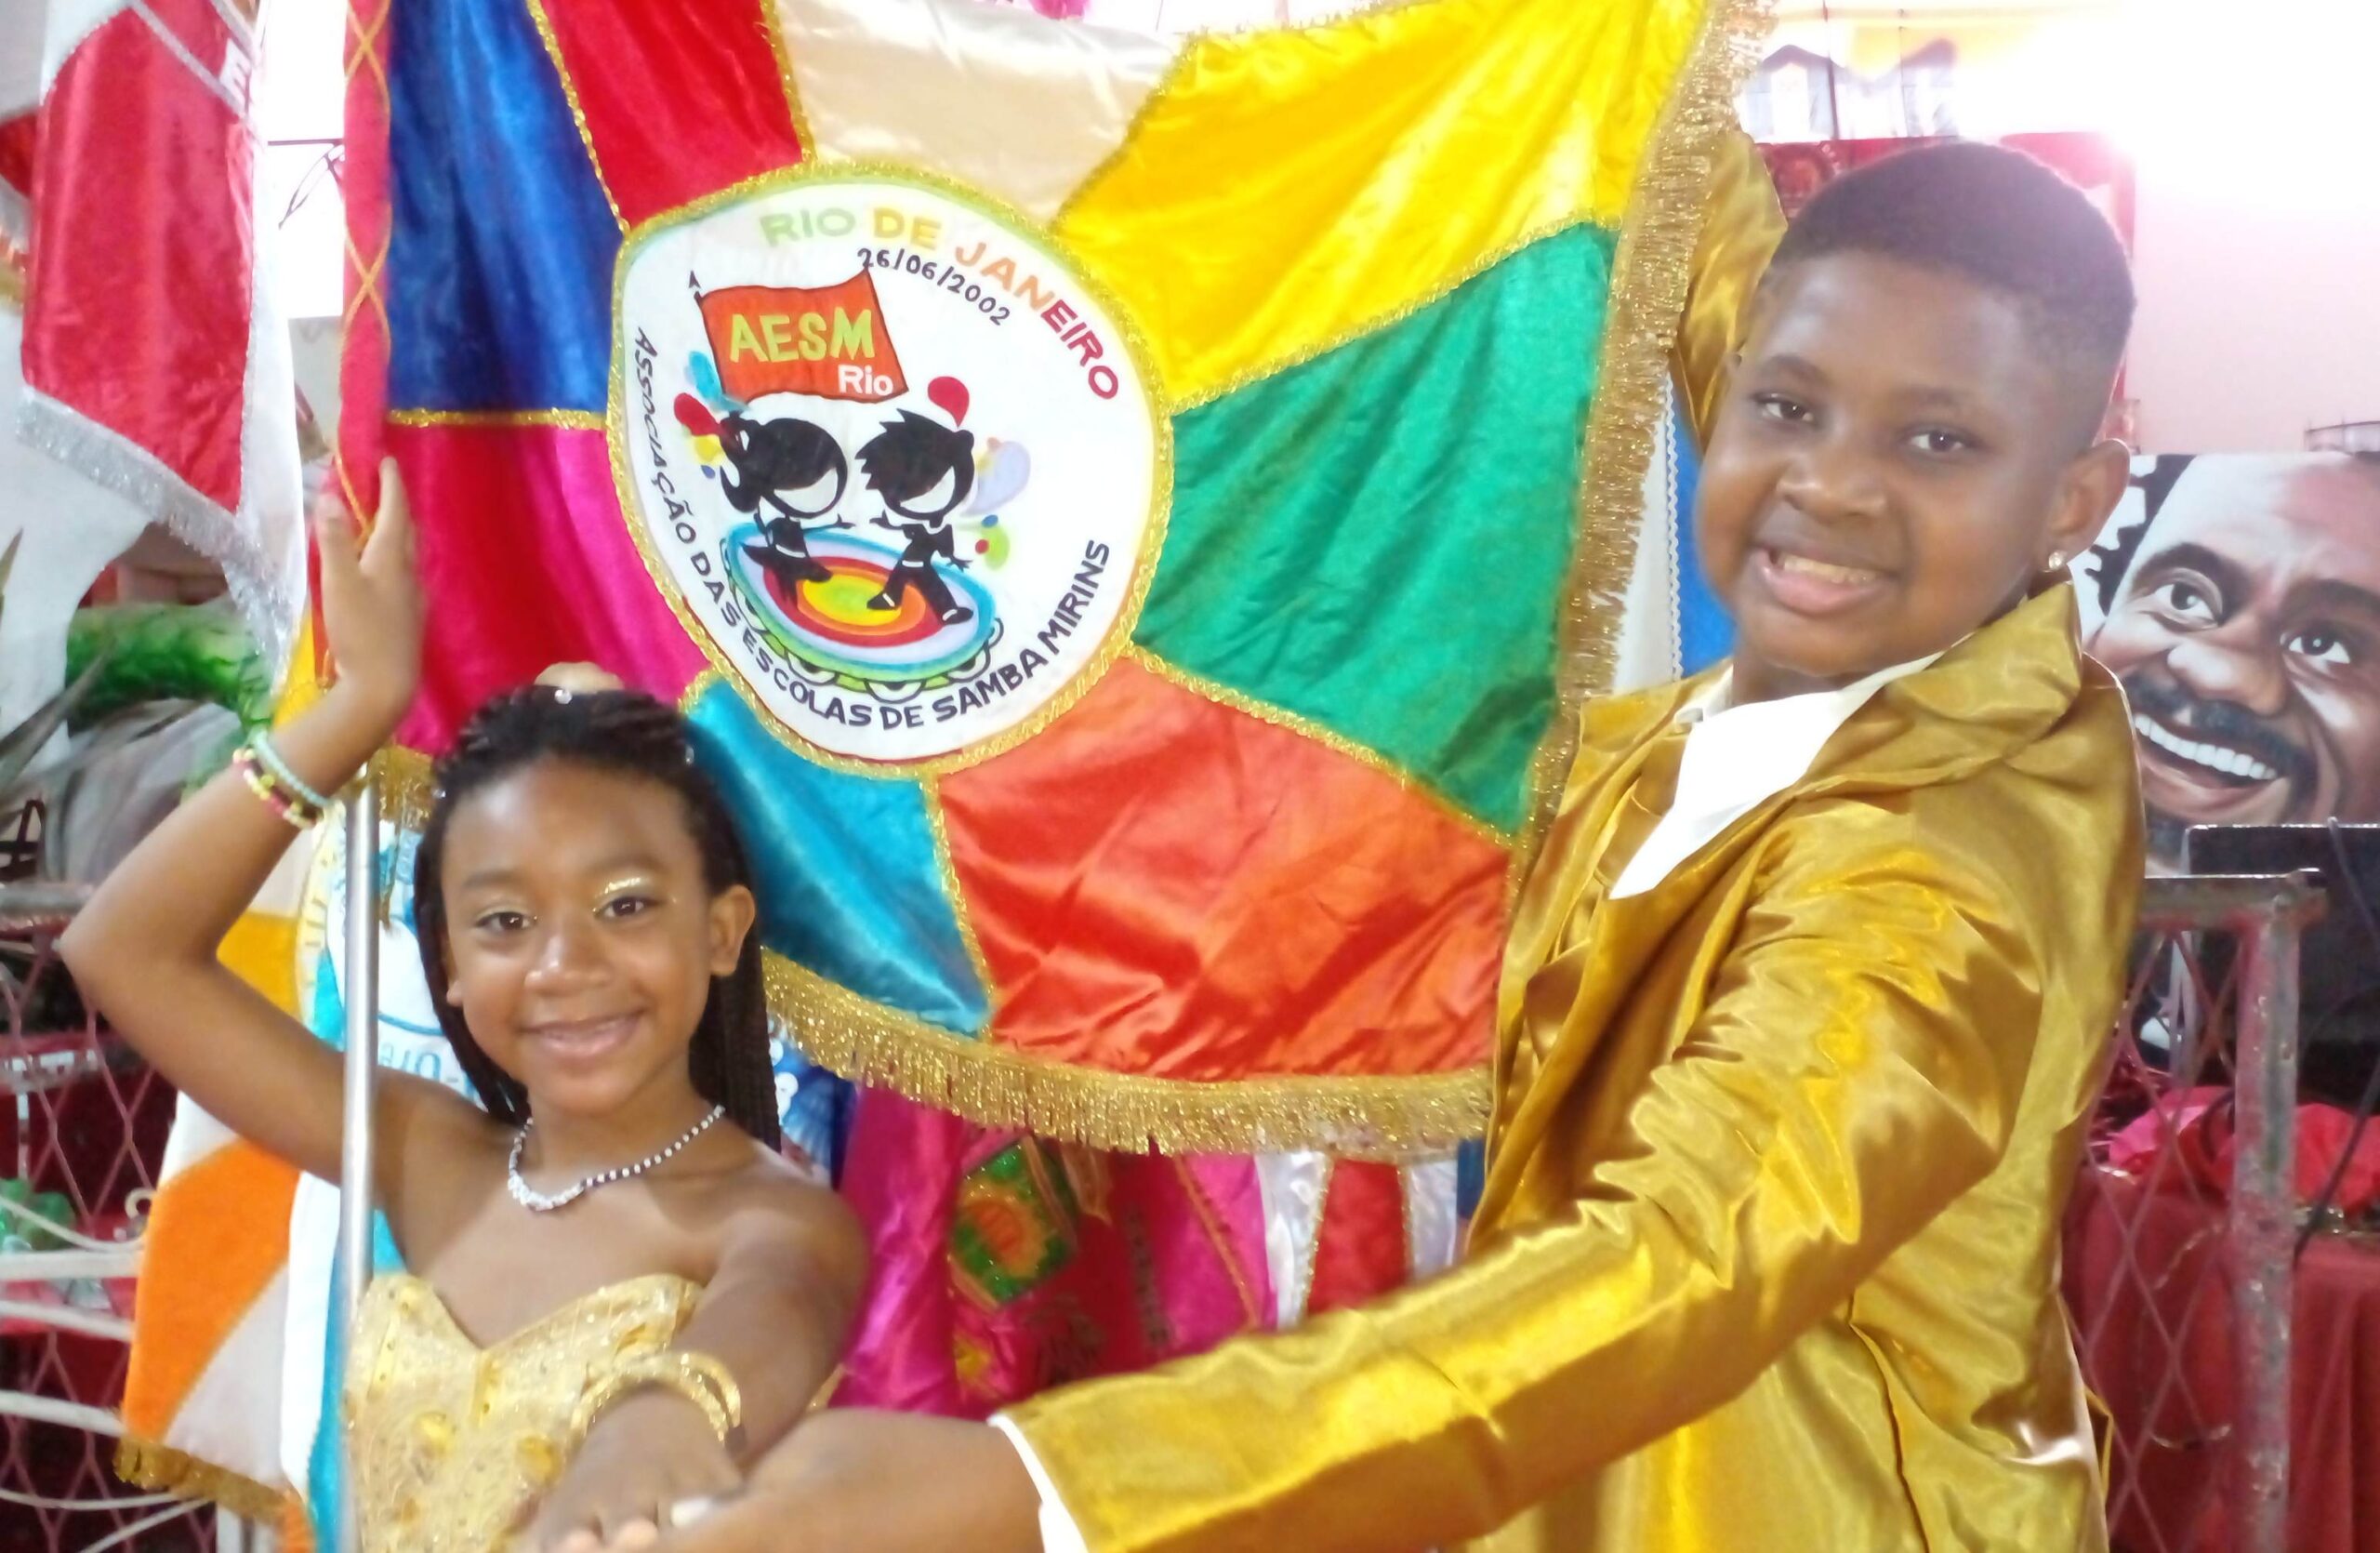 Aesm-Rio inicia gravação dos sambas de enredo das escolas mirins